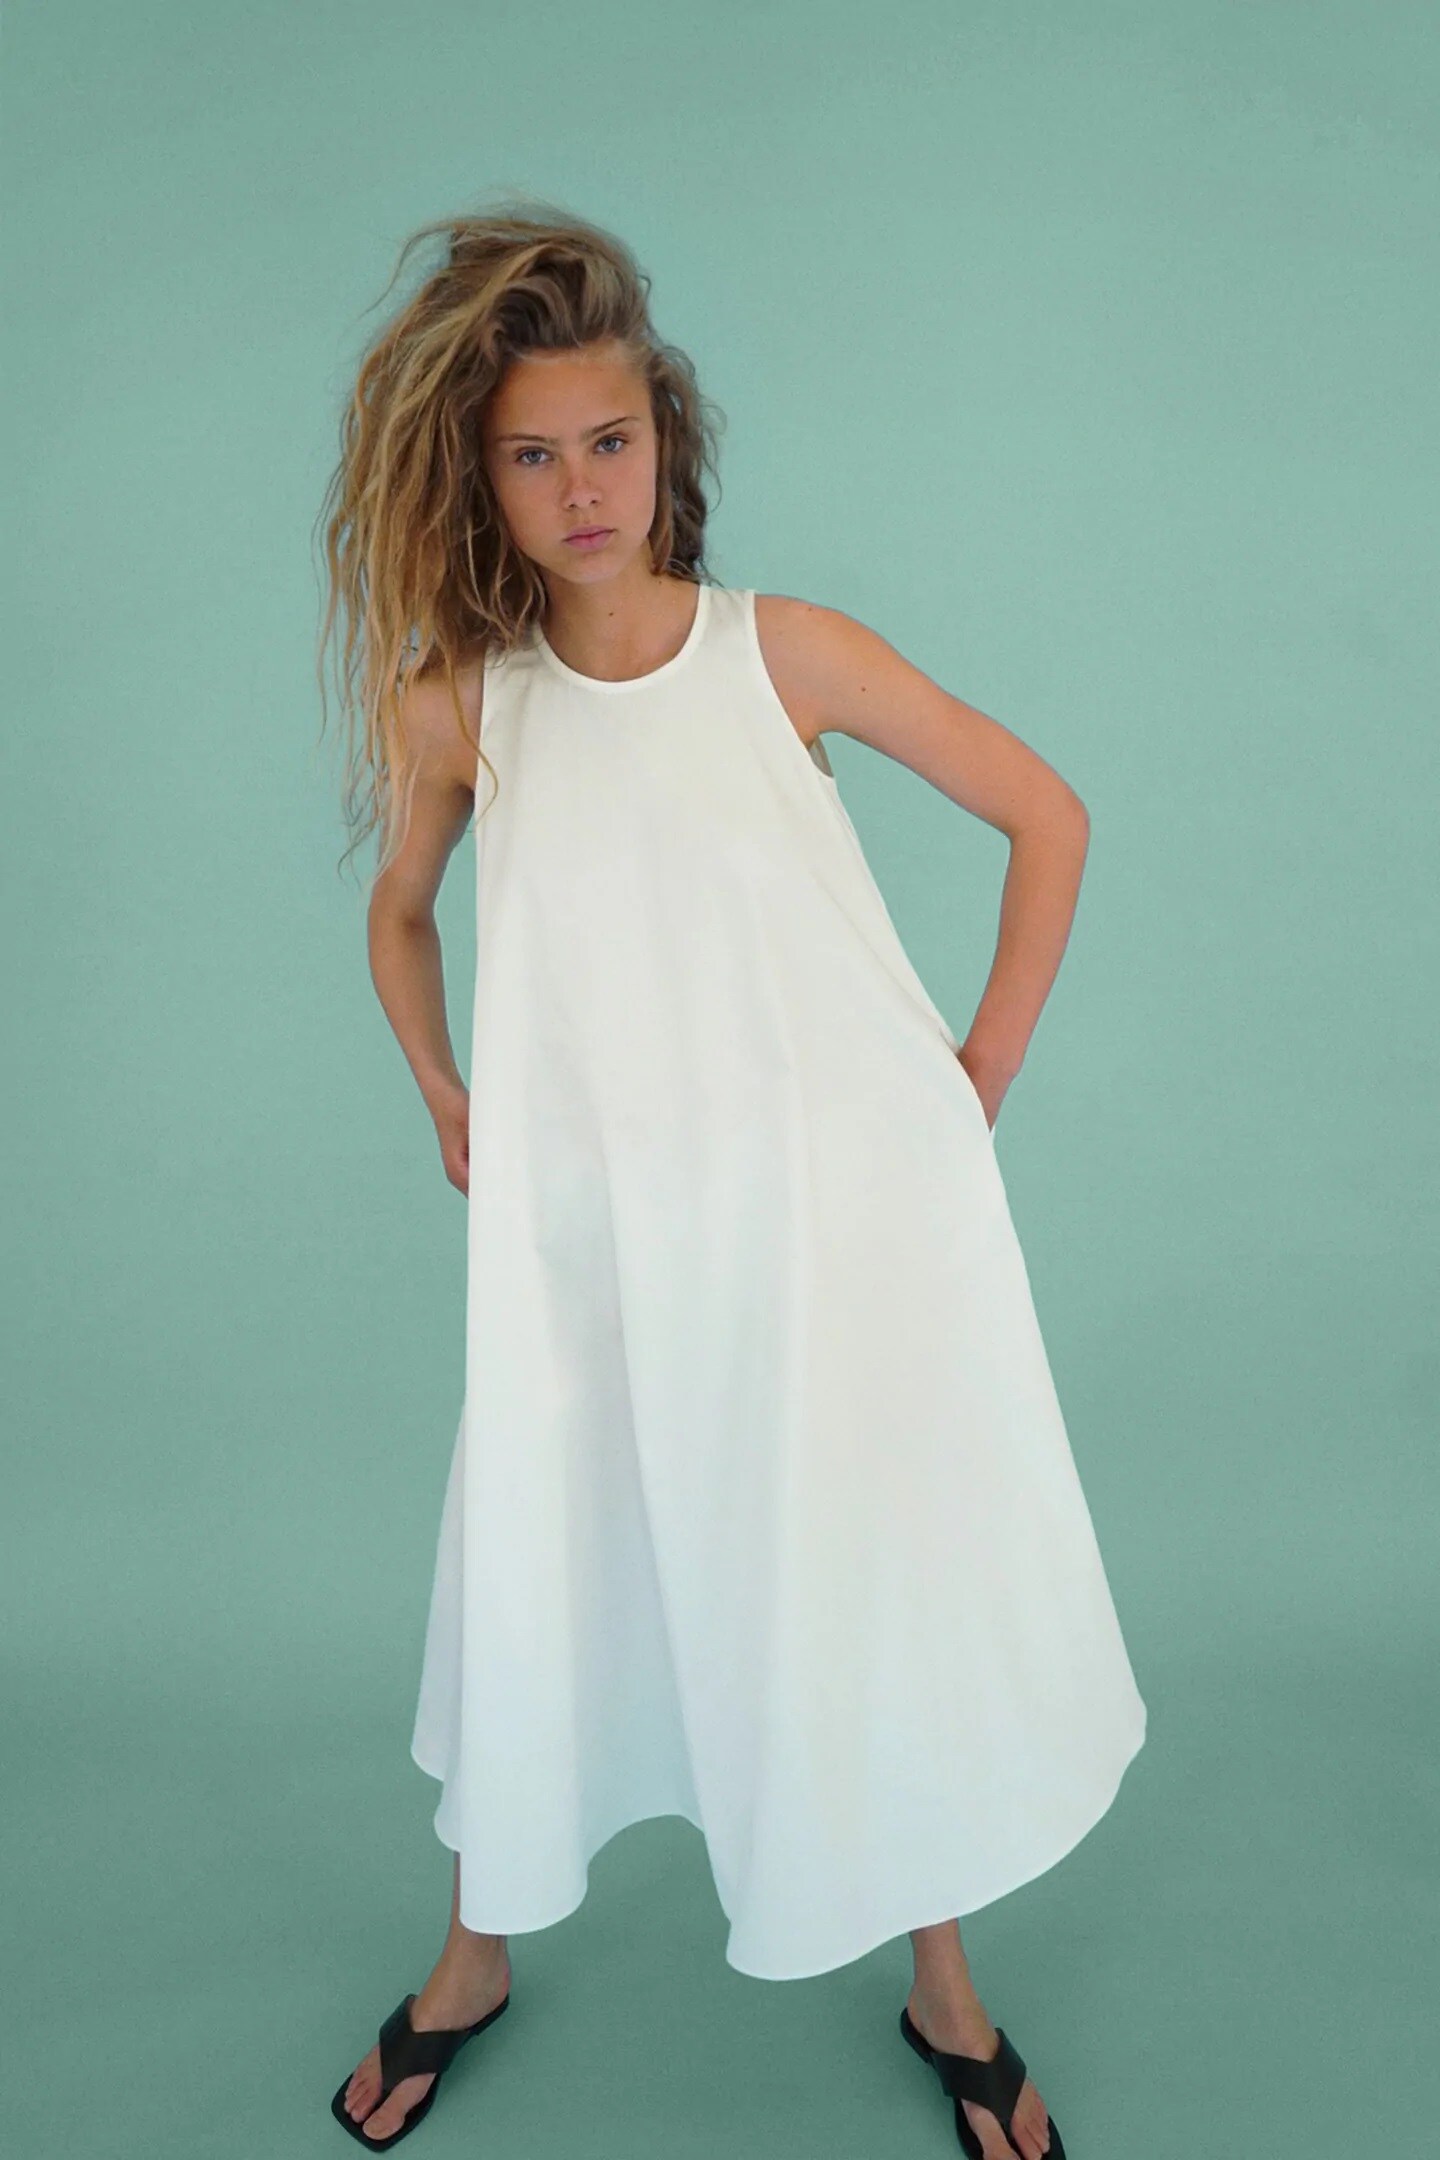 Fotos: Los 13 vestidos blancos más bonitos y que nos vamos a comprar en las rebajas del verano 2020 Mujer Hoy